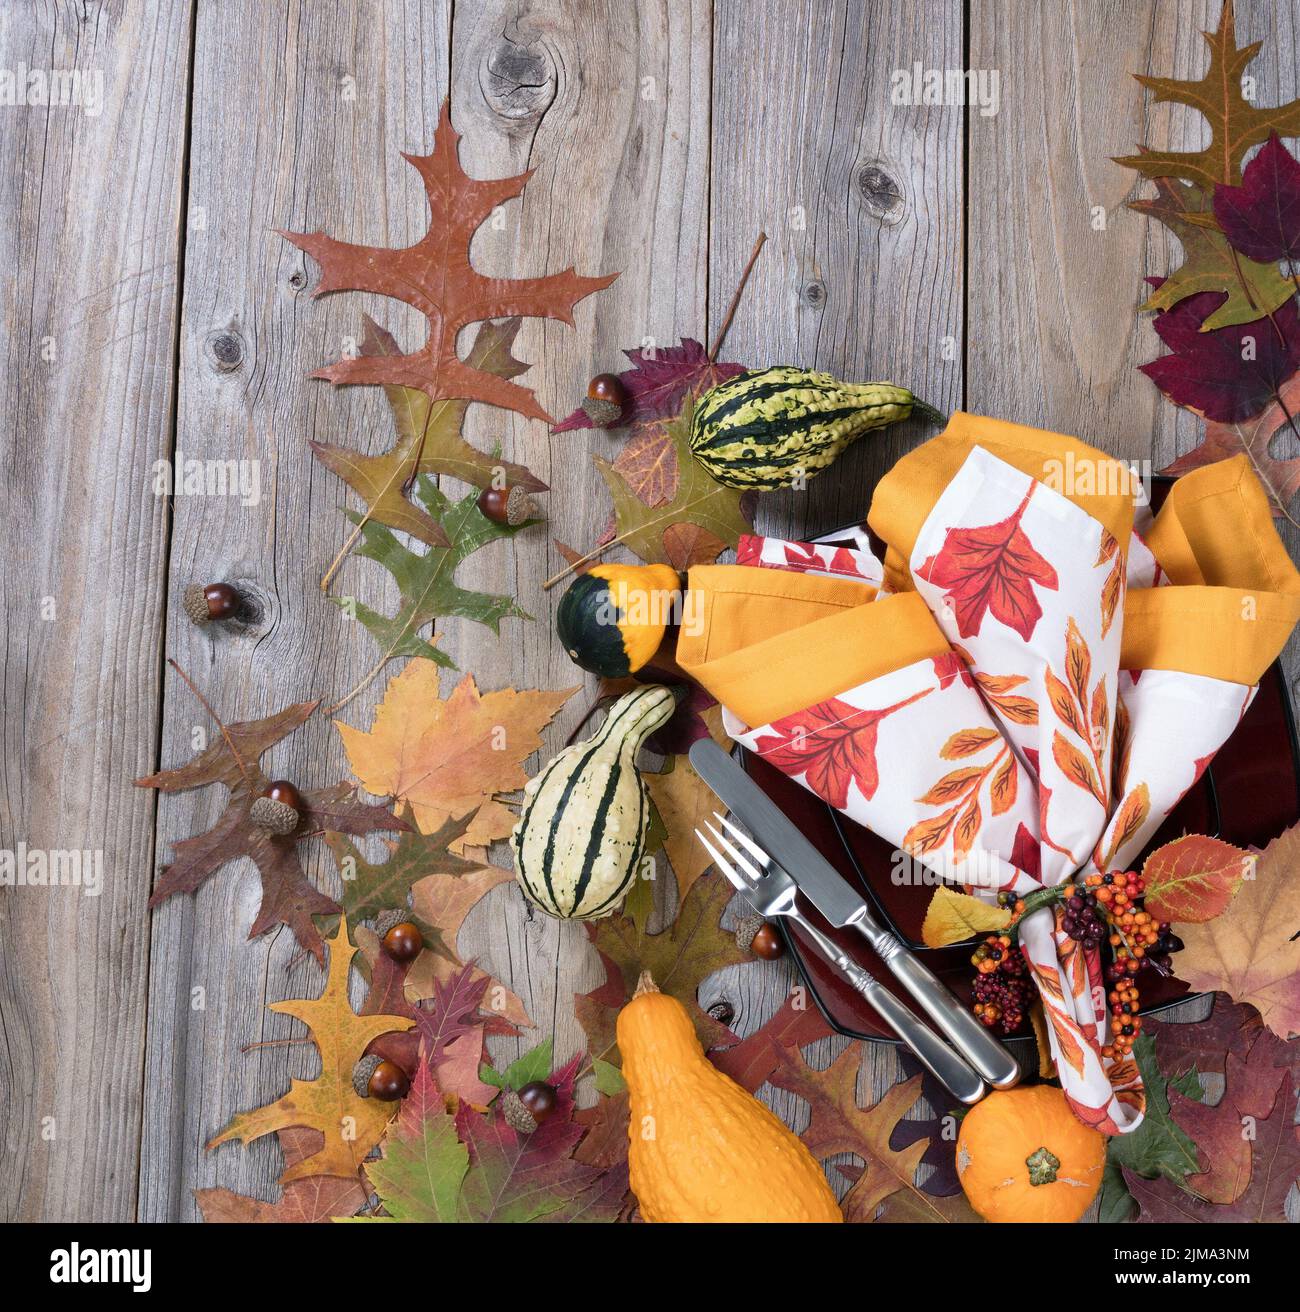 Cena para la temporada de otoño con decoración de calabaza y hojas sobre rústicas tablas de madera Foto de stock